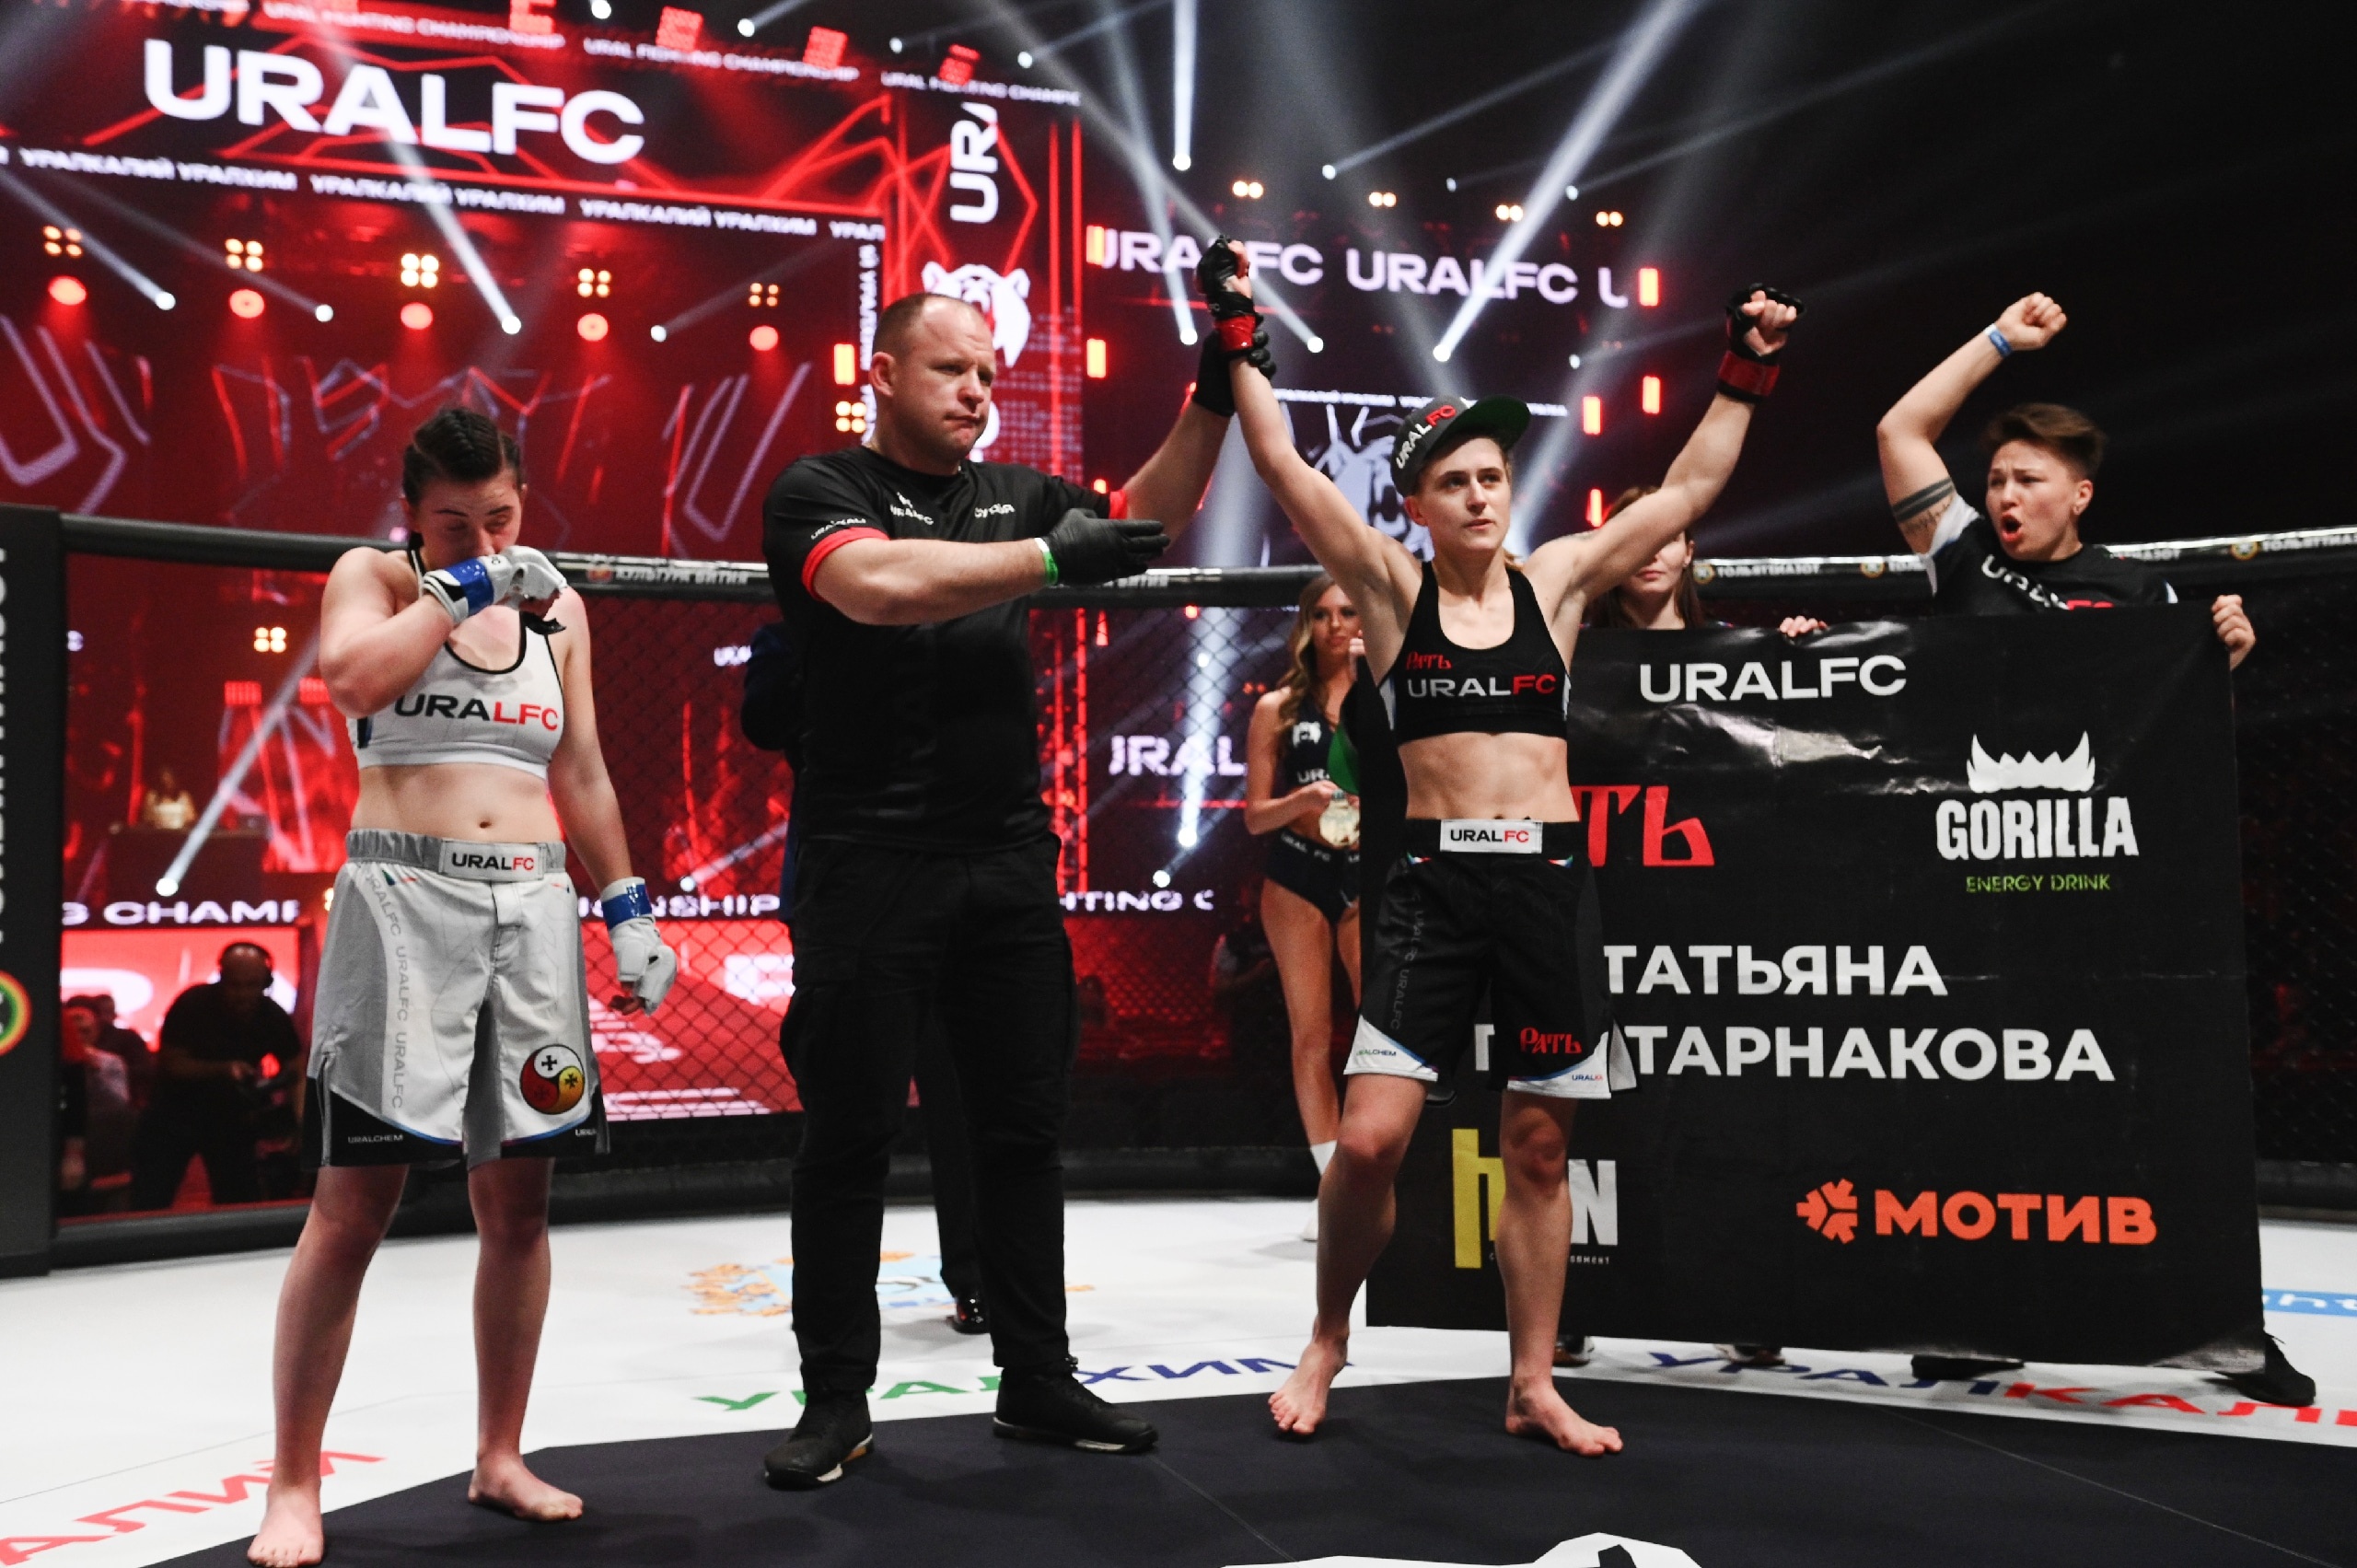 Татьяна Постарнакова – одна из самых перспективных российских девушек в MMA